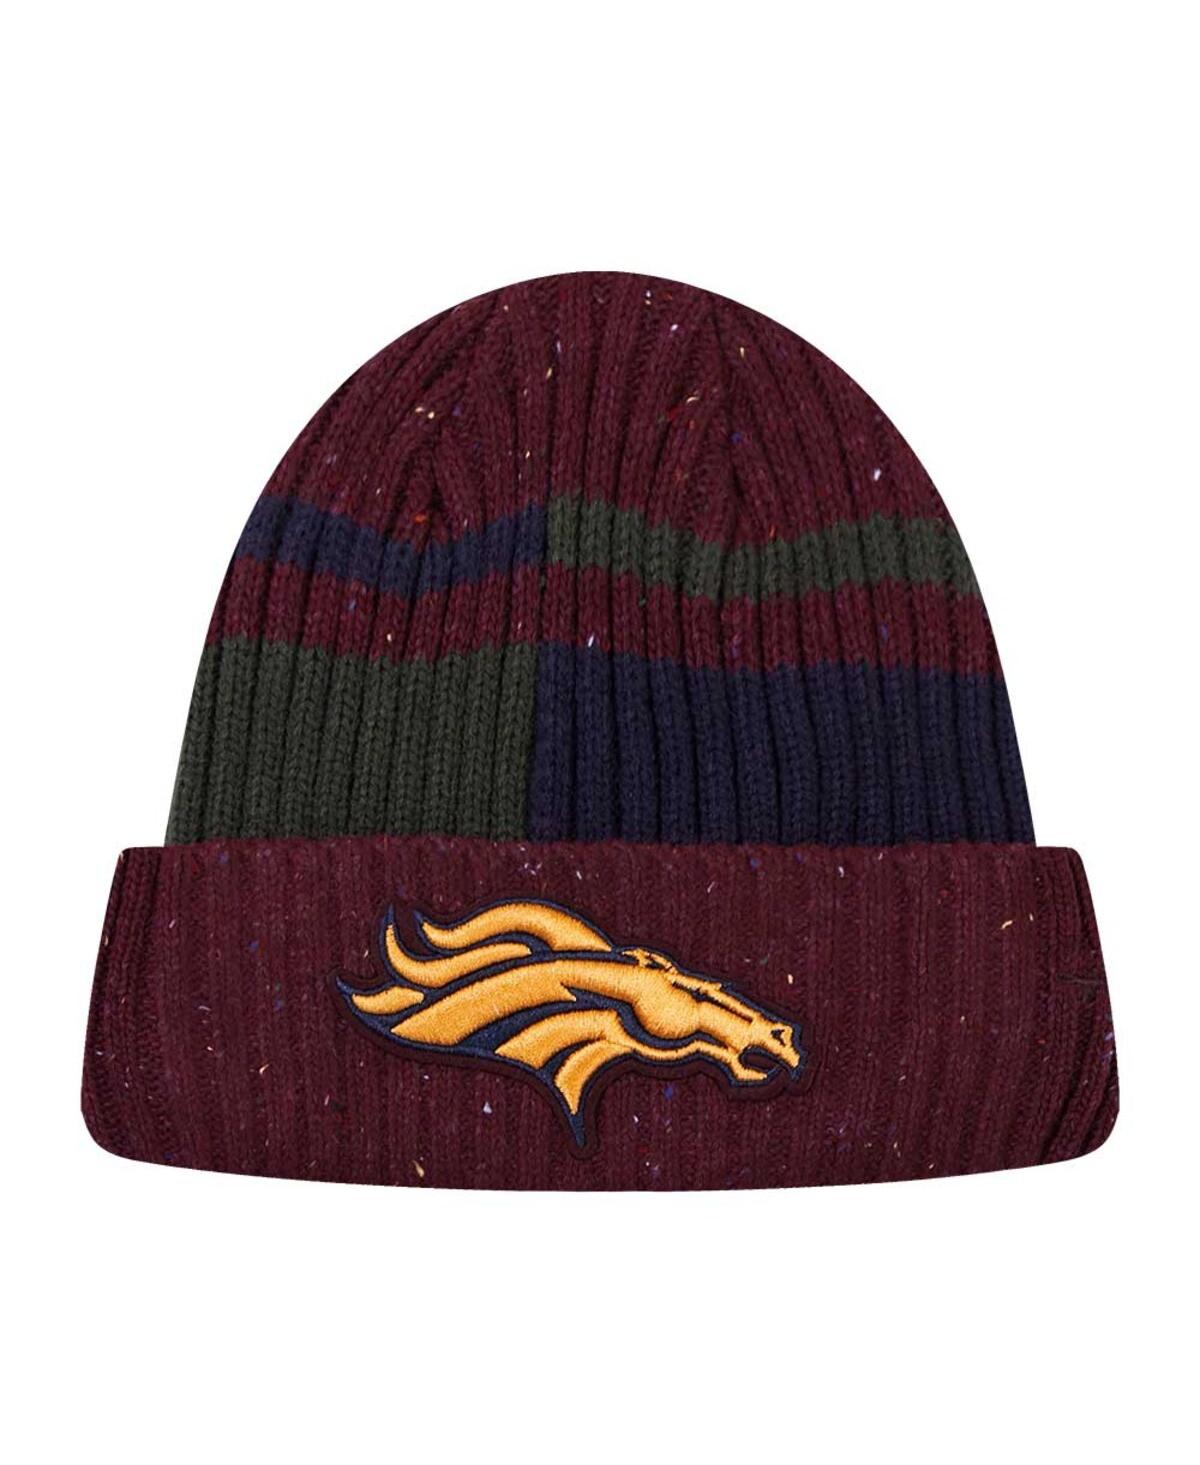 Shop Pro Standard Men's  Burgundy Denver Broncos Speckled Cuffed Knit Hat